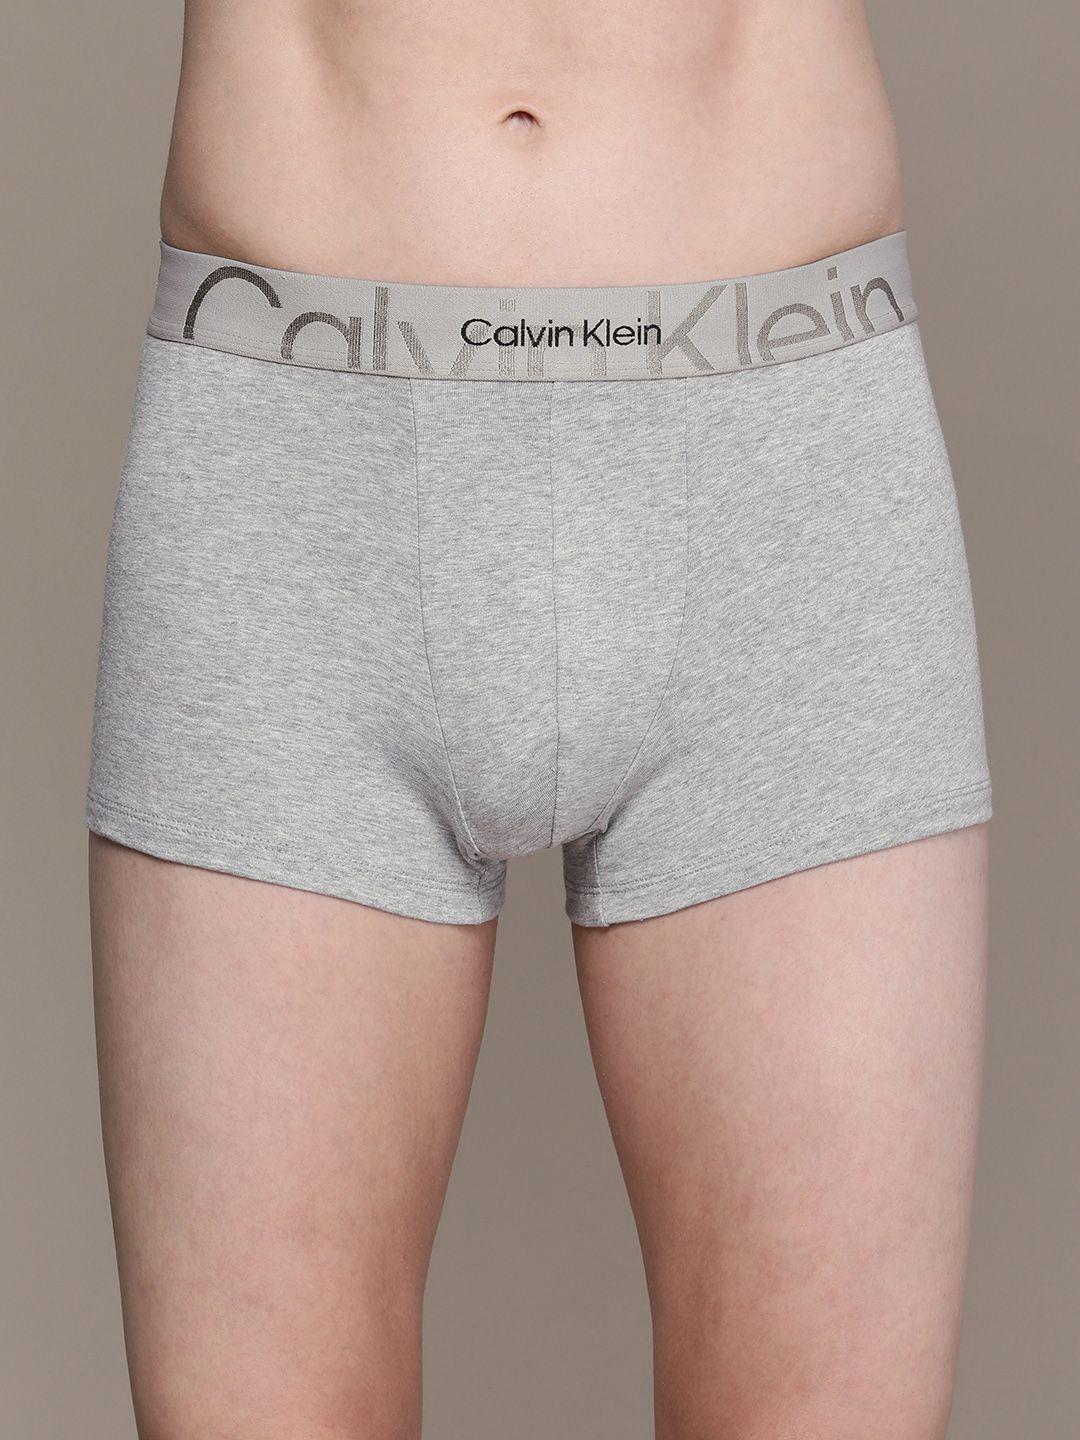 calvin klein underwear men grey solid trunks- nb3299p7a